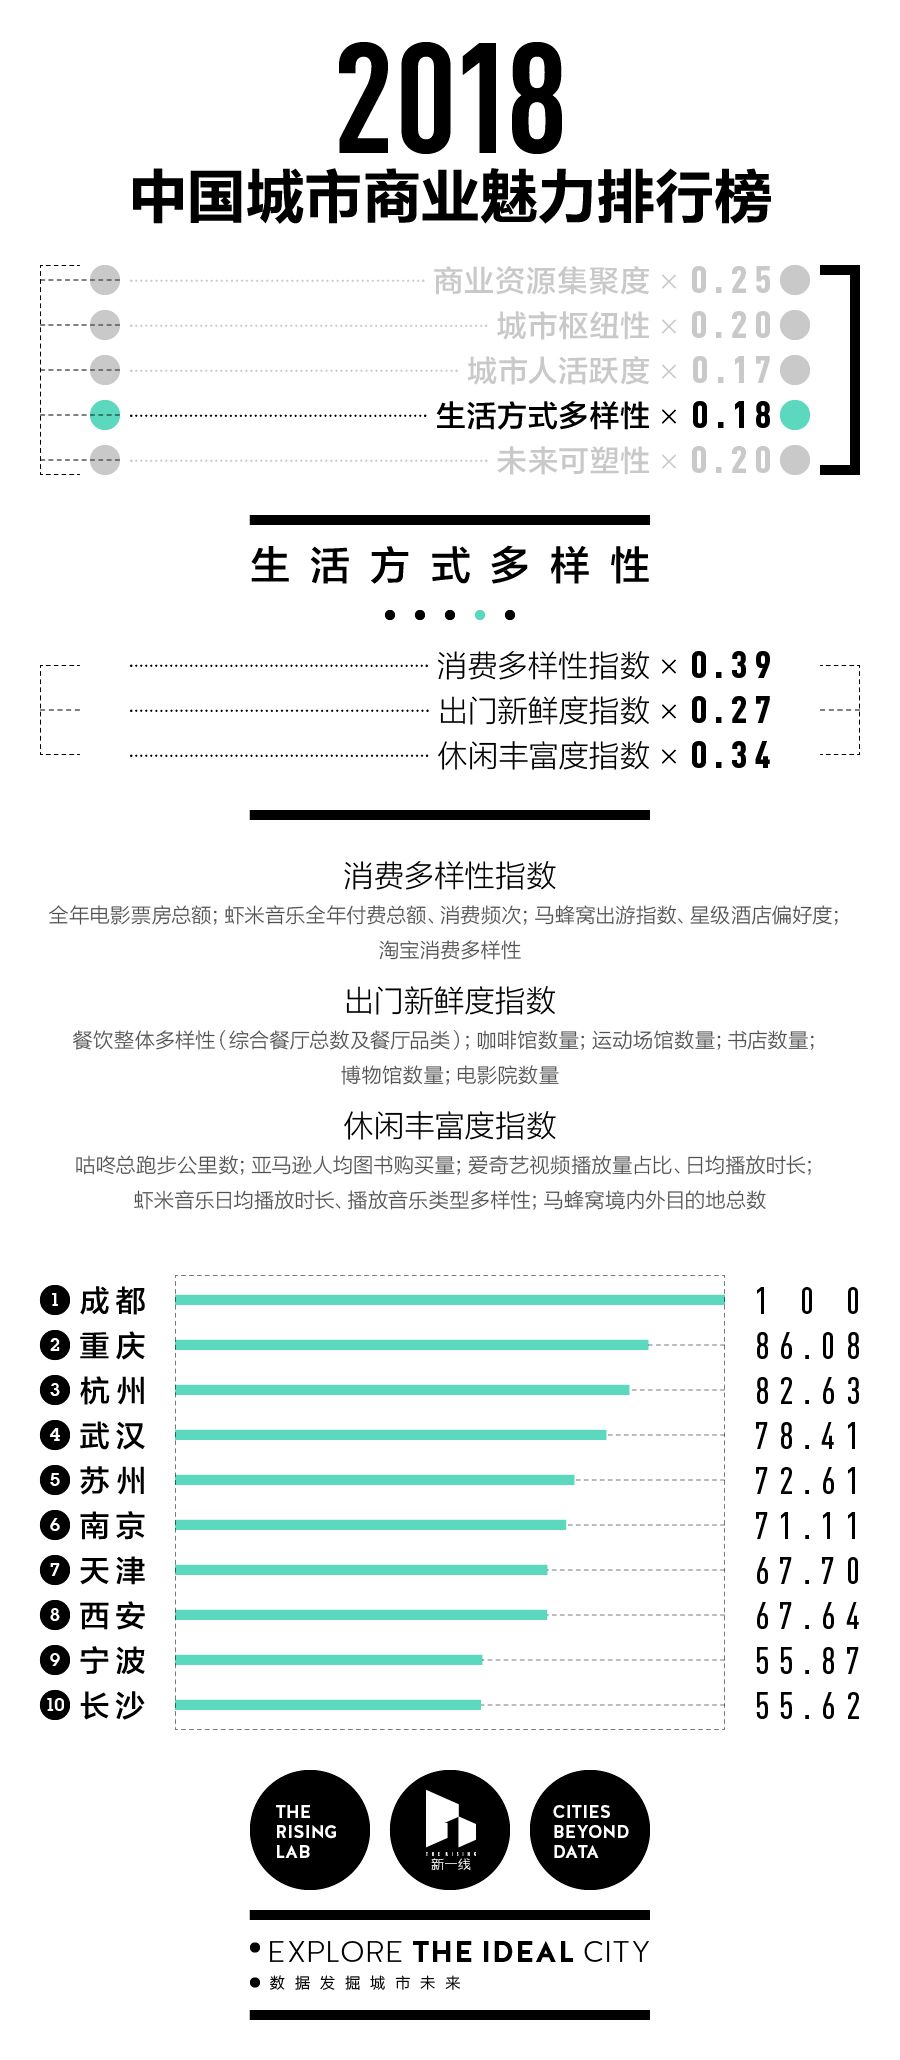 中国城市商业魅力排行榜发布,成都再次蝉联新